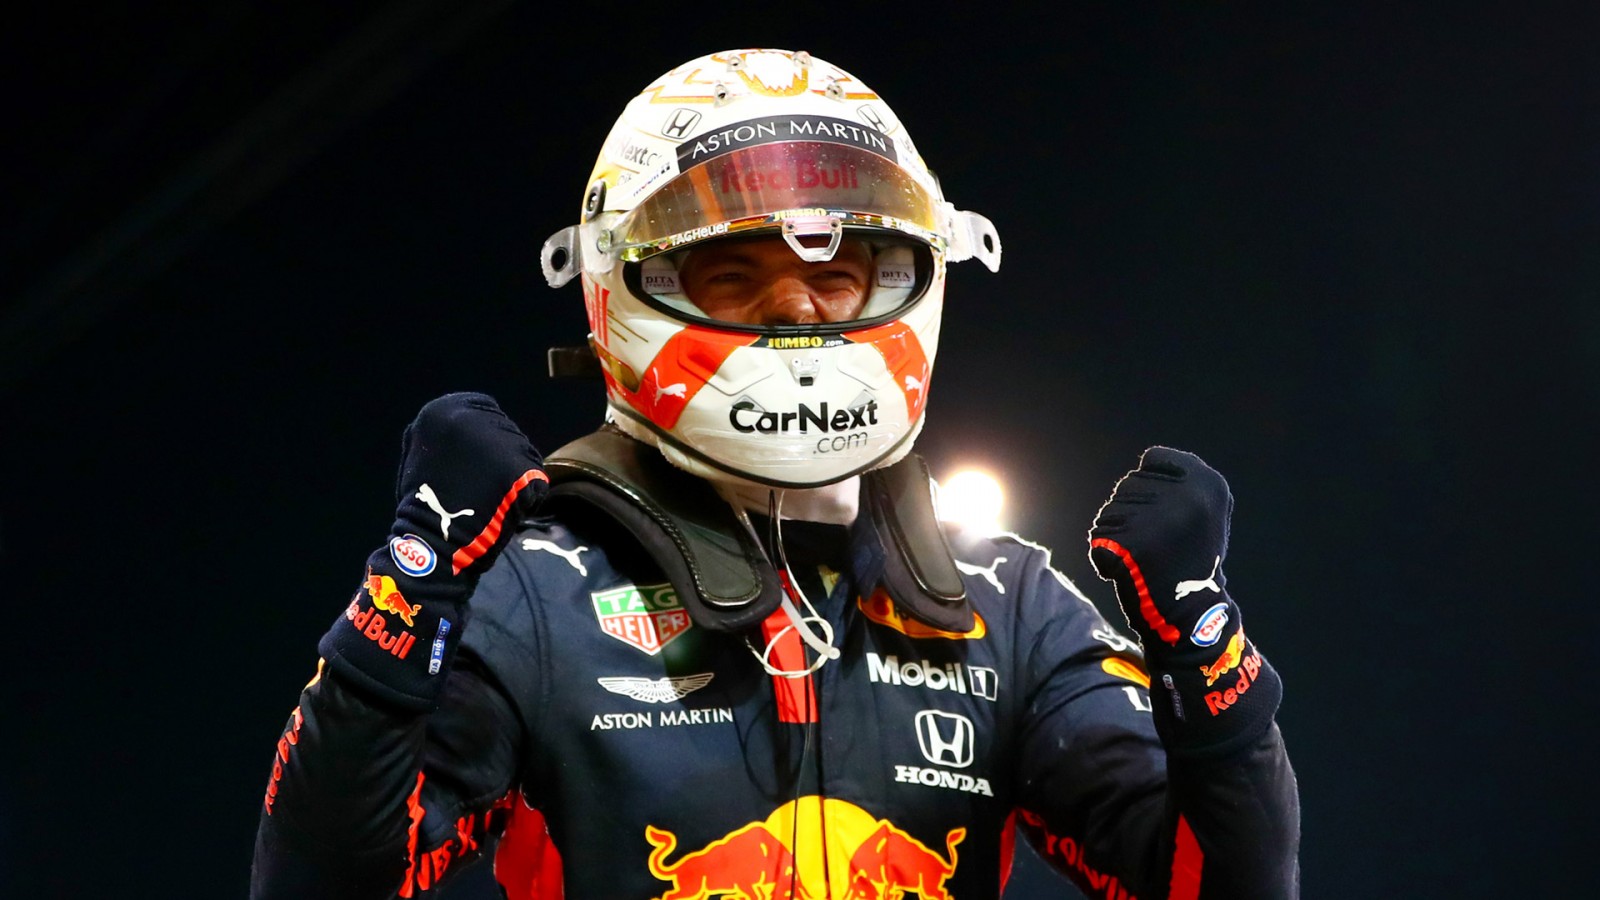 Max Verstappen será el ganador del campeonato mundial de fórmula uno de la FIATM según la predicción de F1 2021